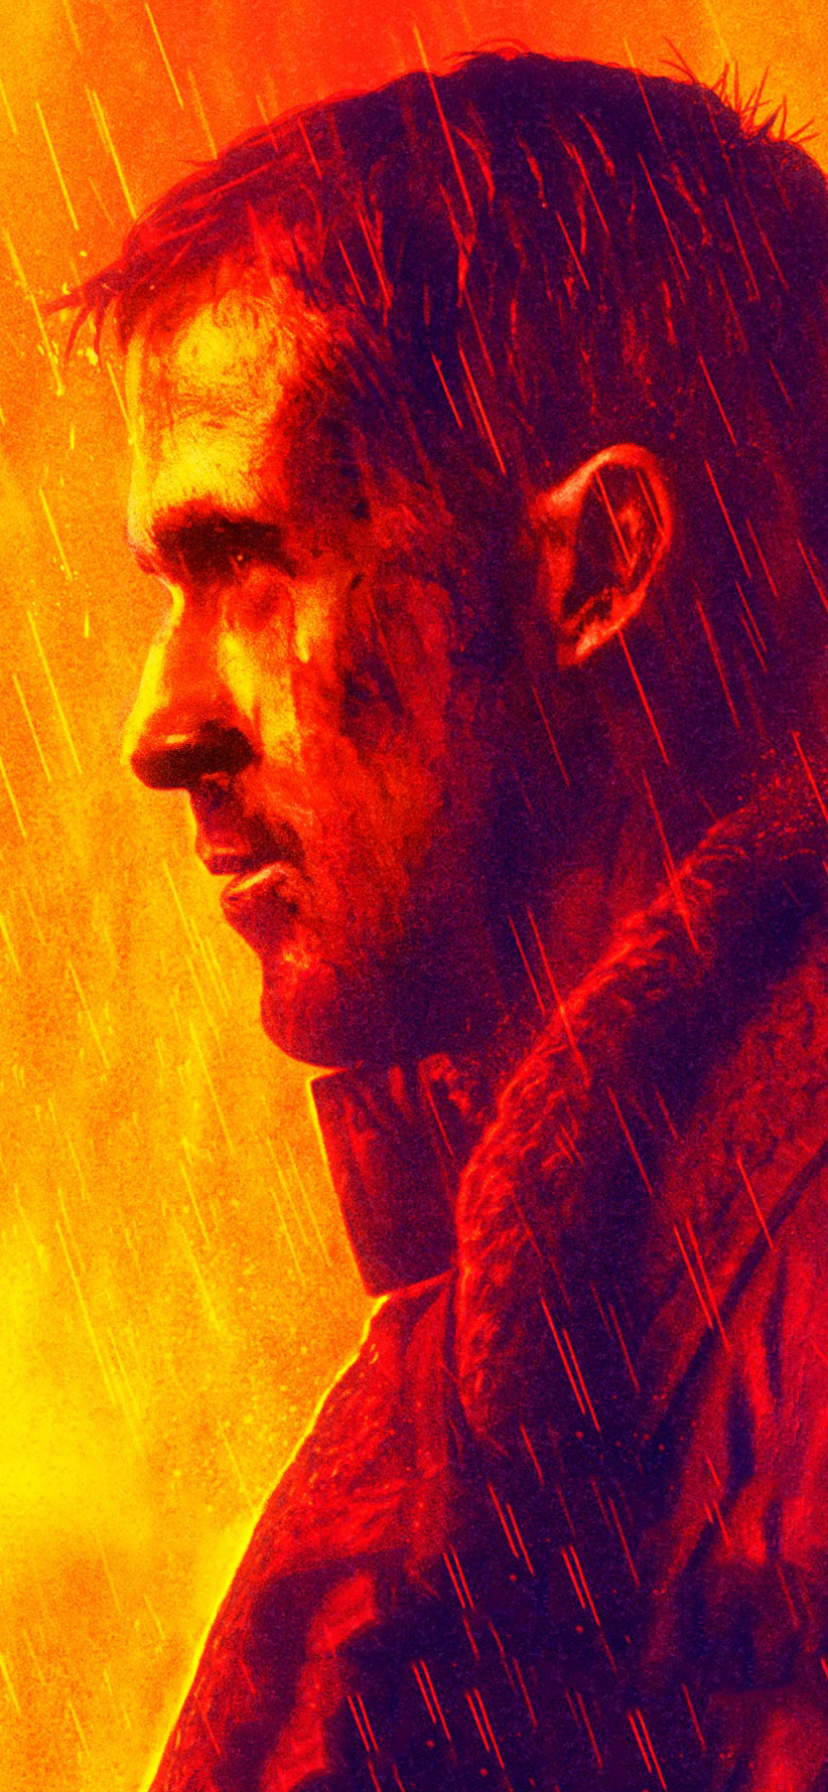 Descarga gratuita de fondo de pantalla para móvil de Ryan Gosling, Películas, Oficial K (Blade Runner 2049), Blade Runner 2049.